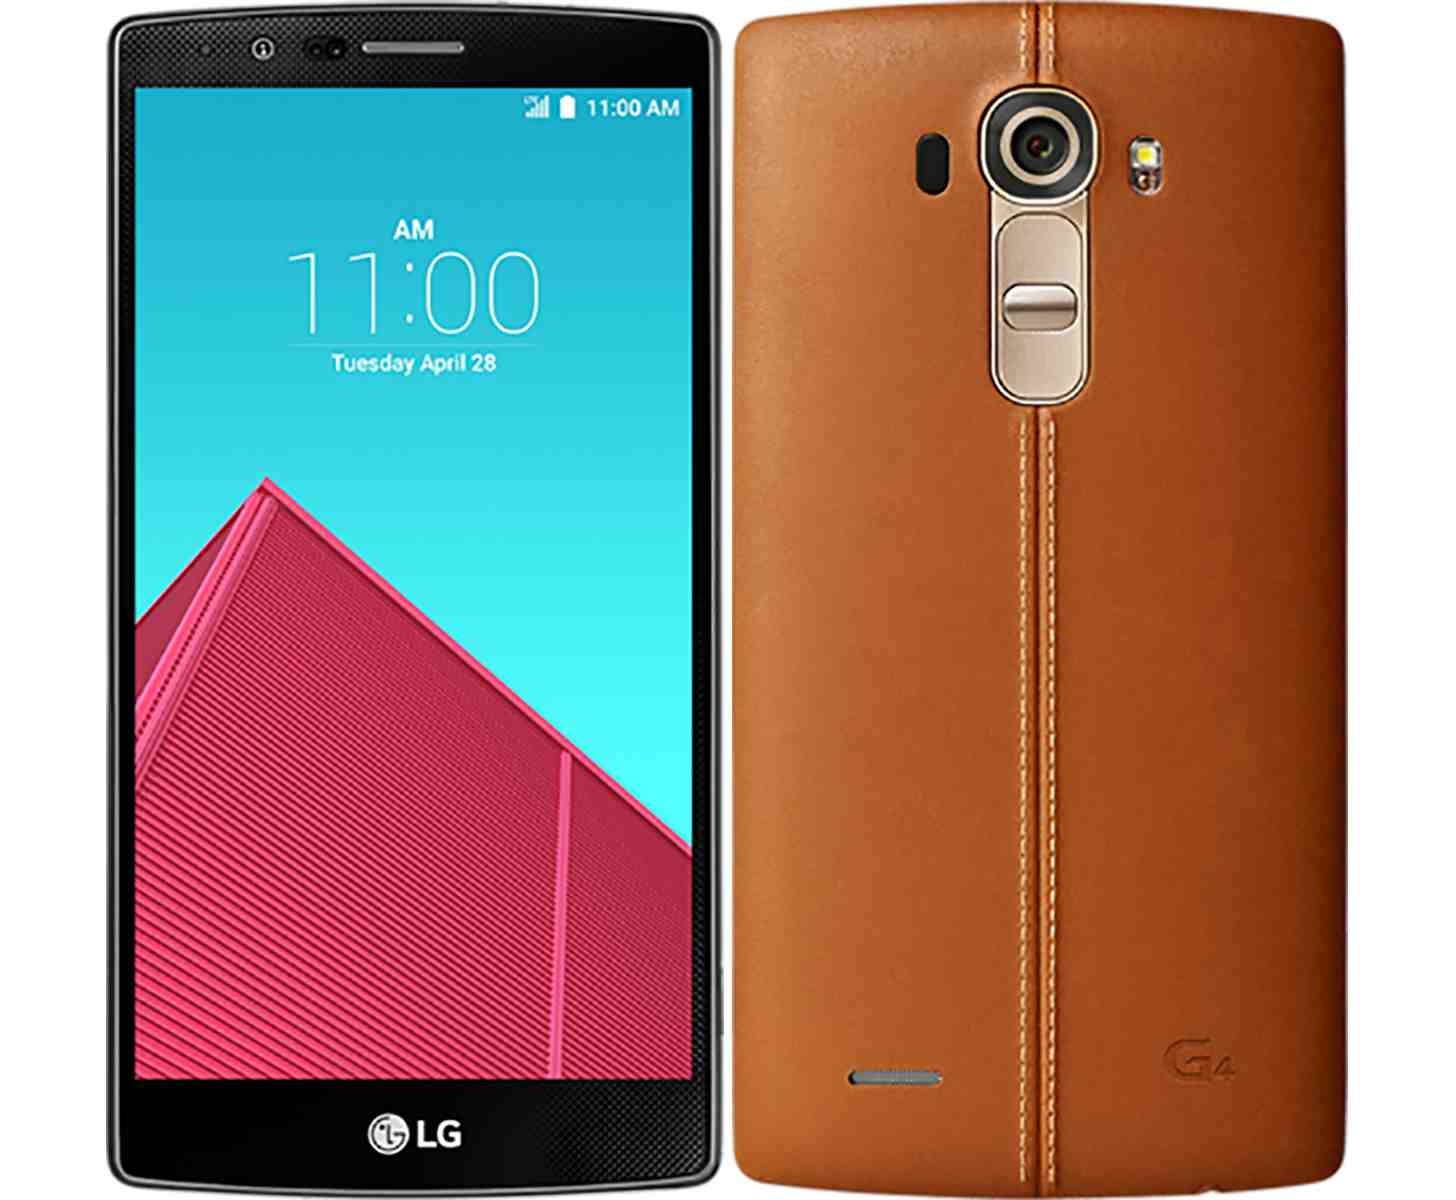 🔥 Soldes : le LG G4 (cuir noir) à 317 euros au lieu de 699 euros